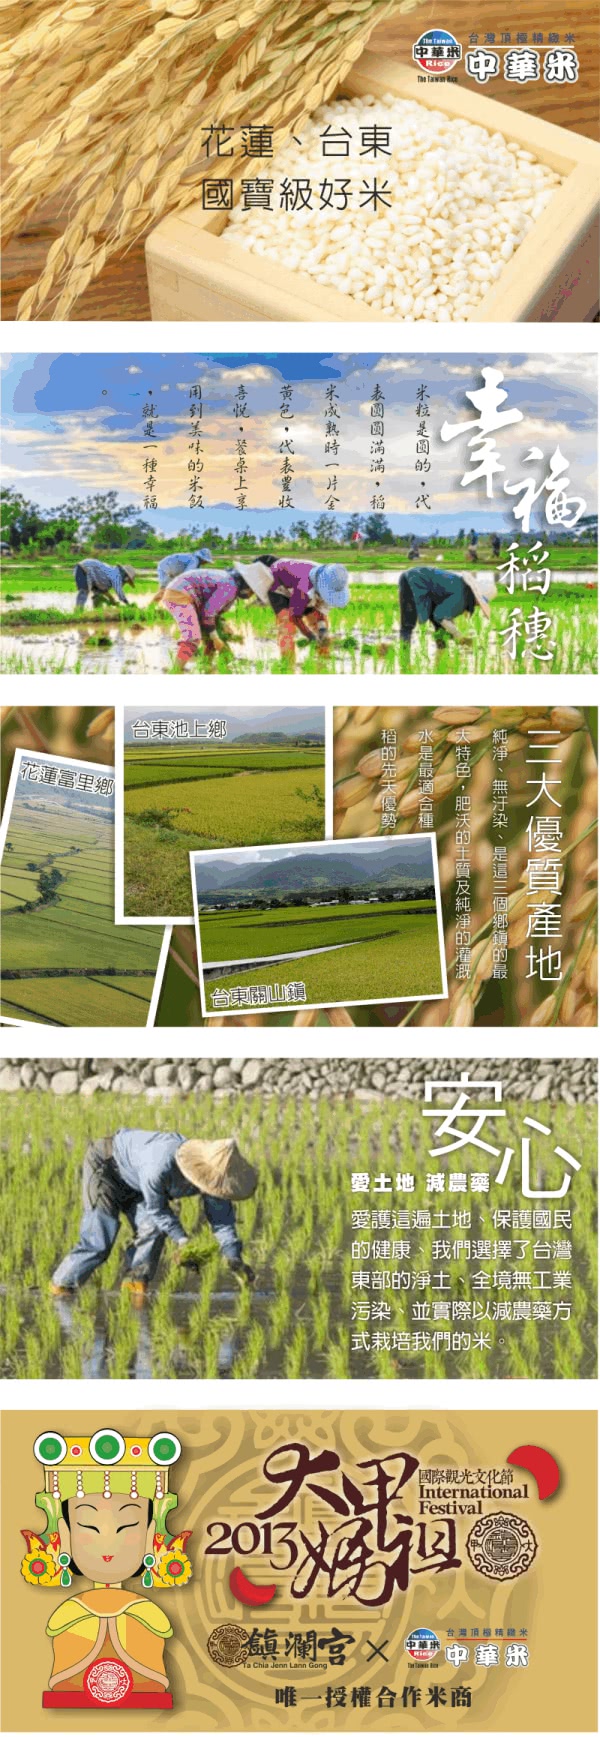 【中華】嚴選池上稻香鮮米-2KG